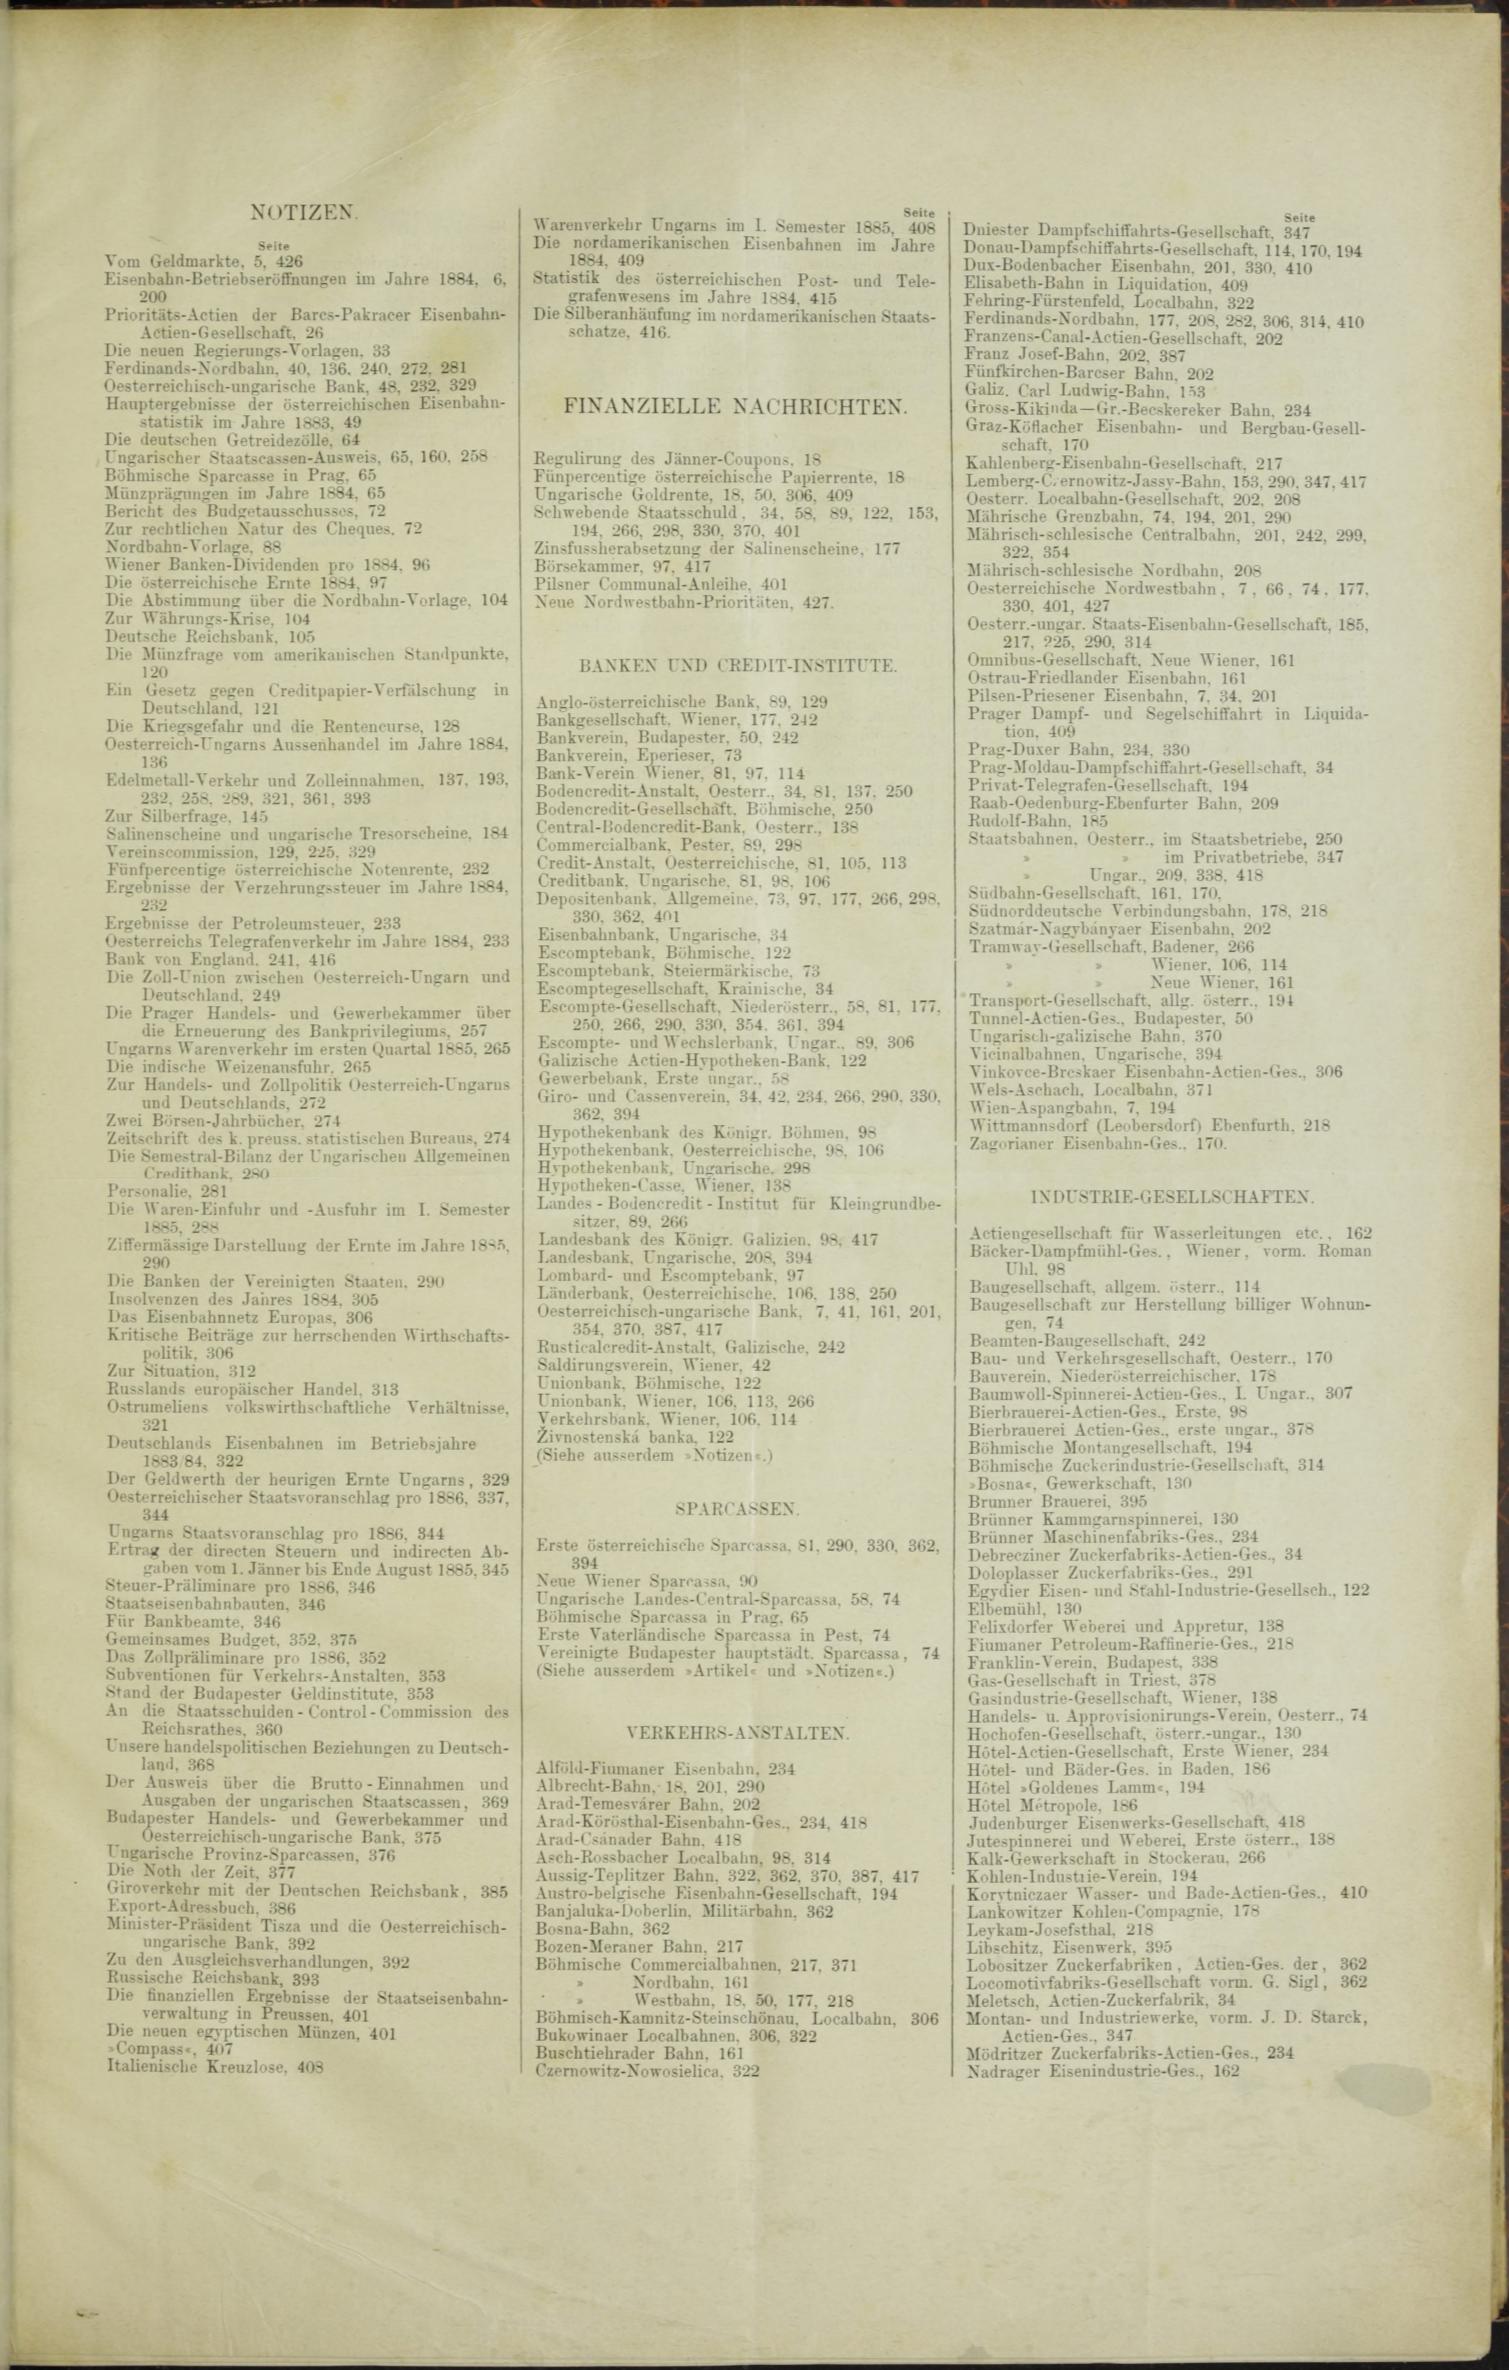 Der Tresor 15.01.1885 - Seite 11